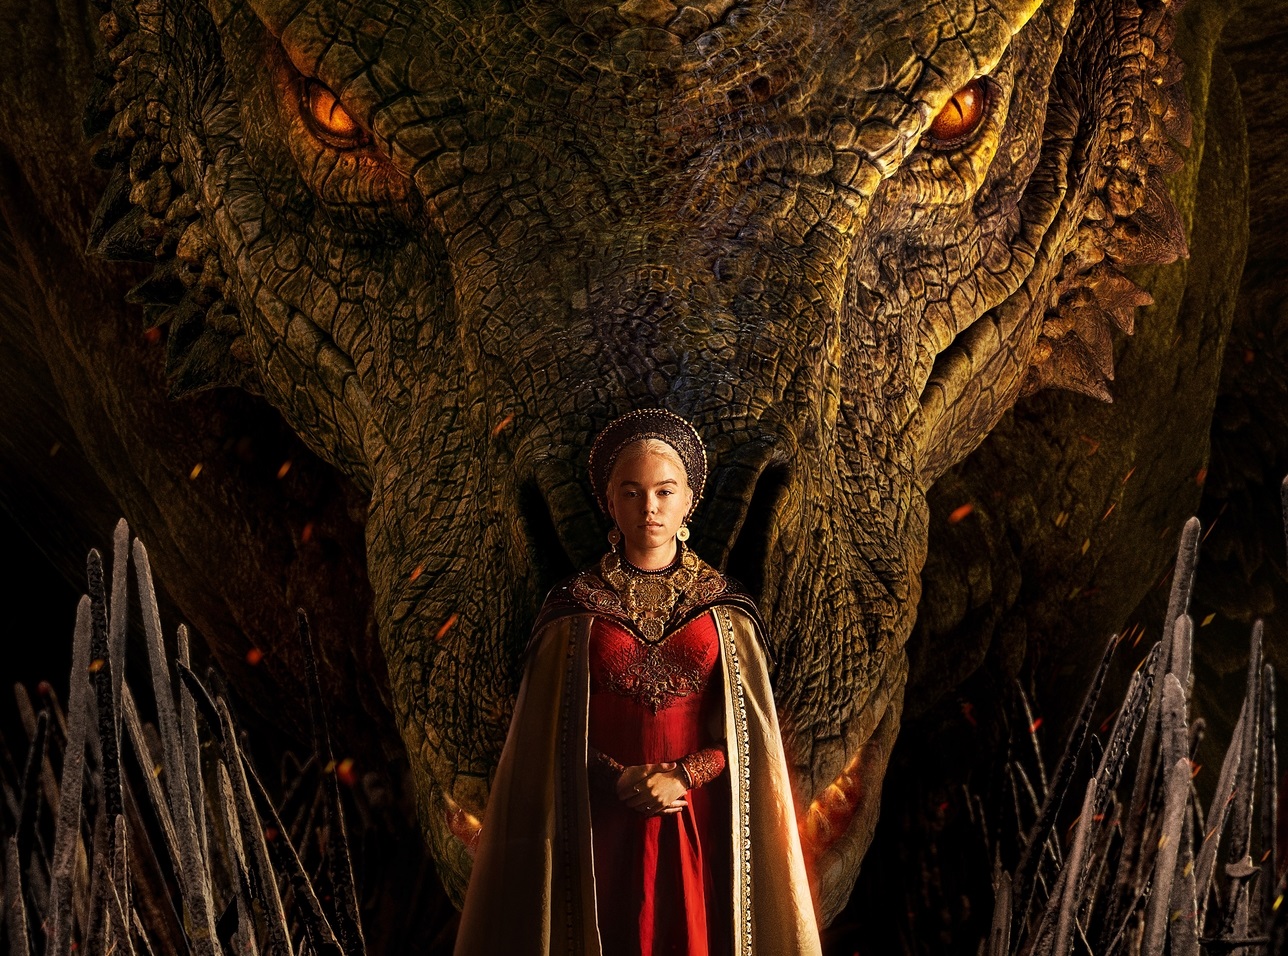 House of the Dragon - Por onde começar o livro depois da primeira  temporada? - Critical Hits